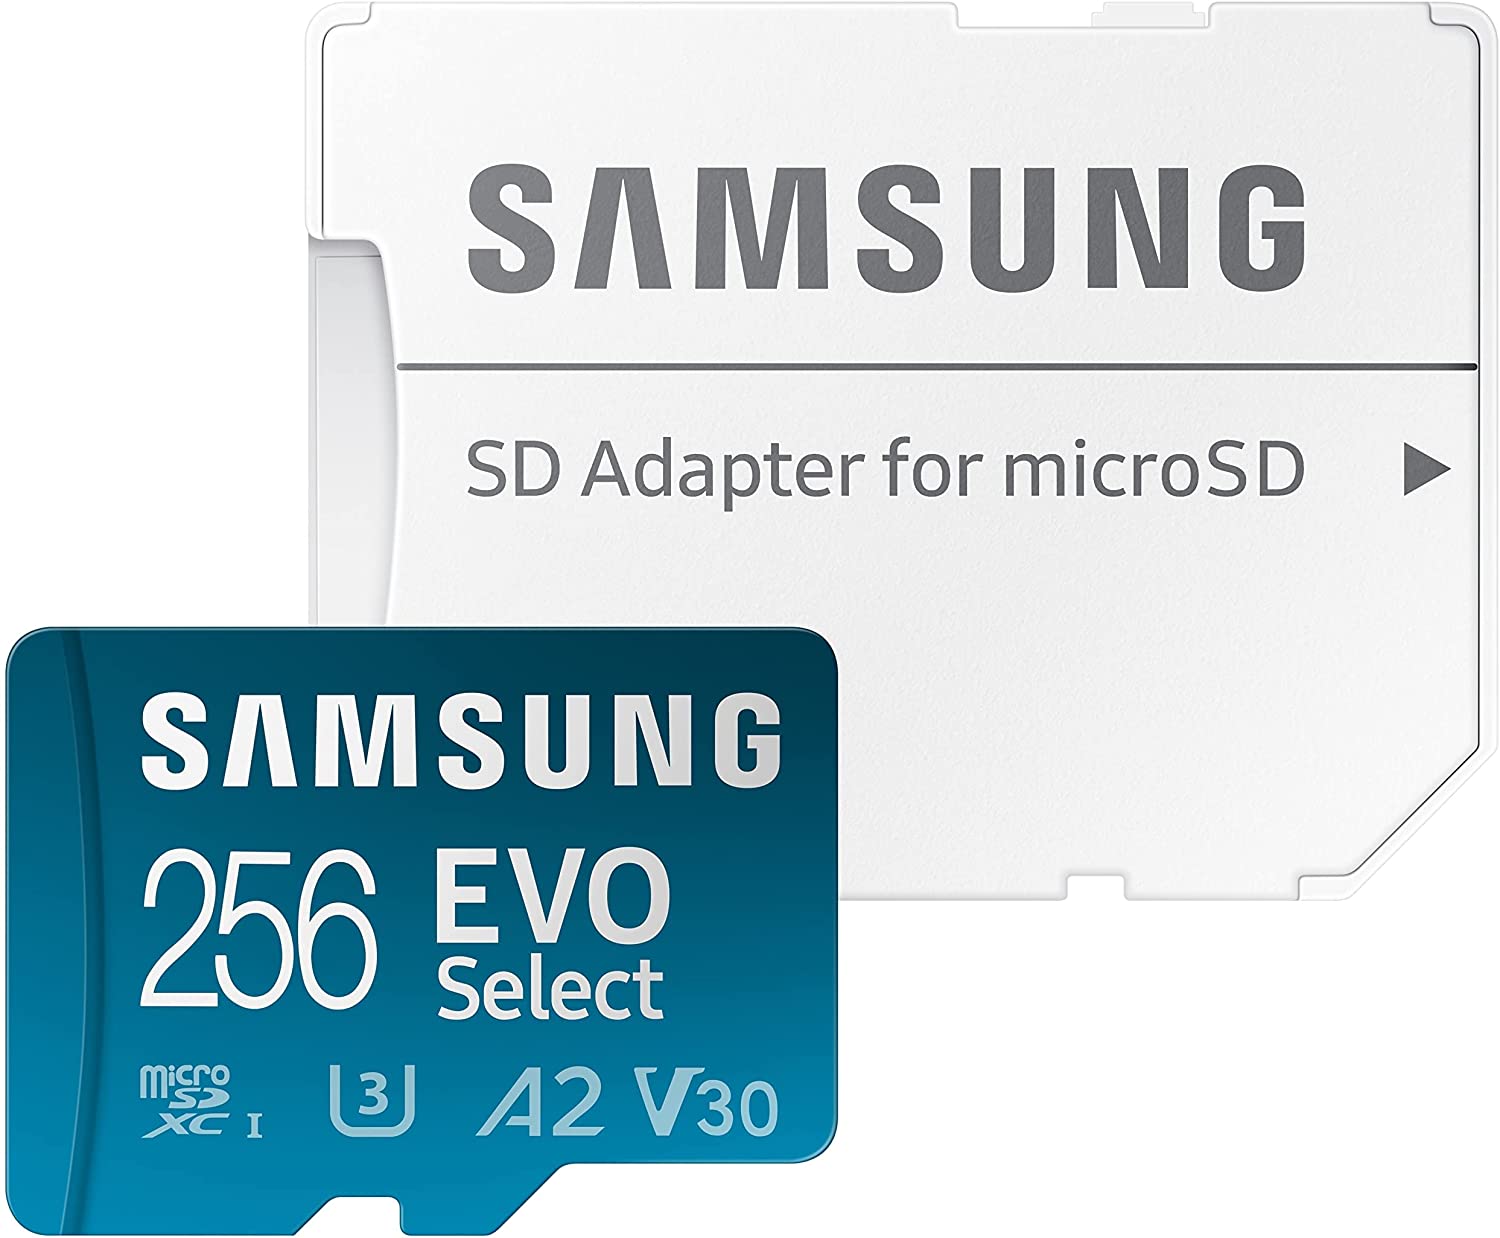 Save Big on the SAMSUNG EVO Select Micro SD-Memory Card